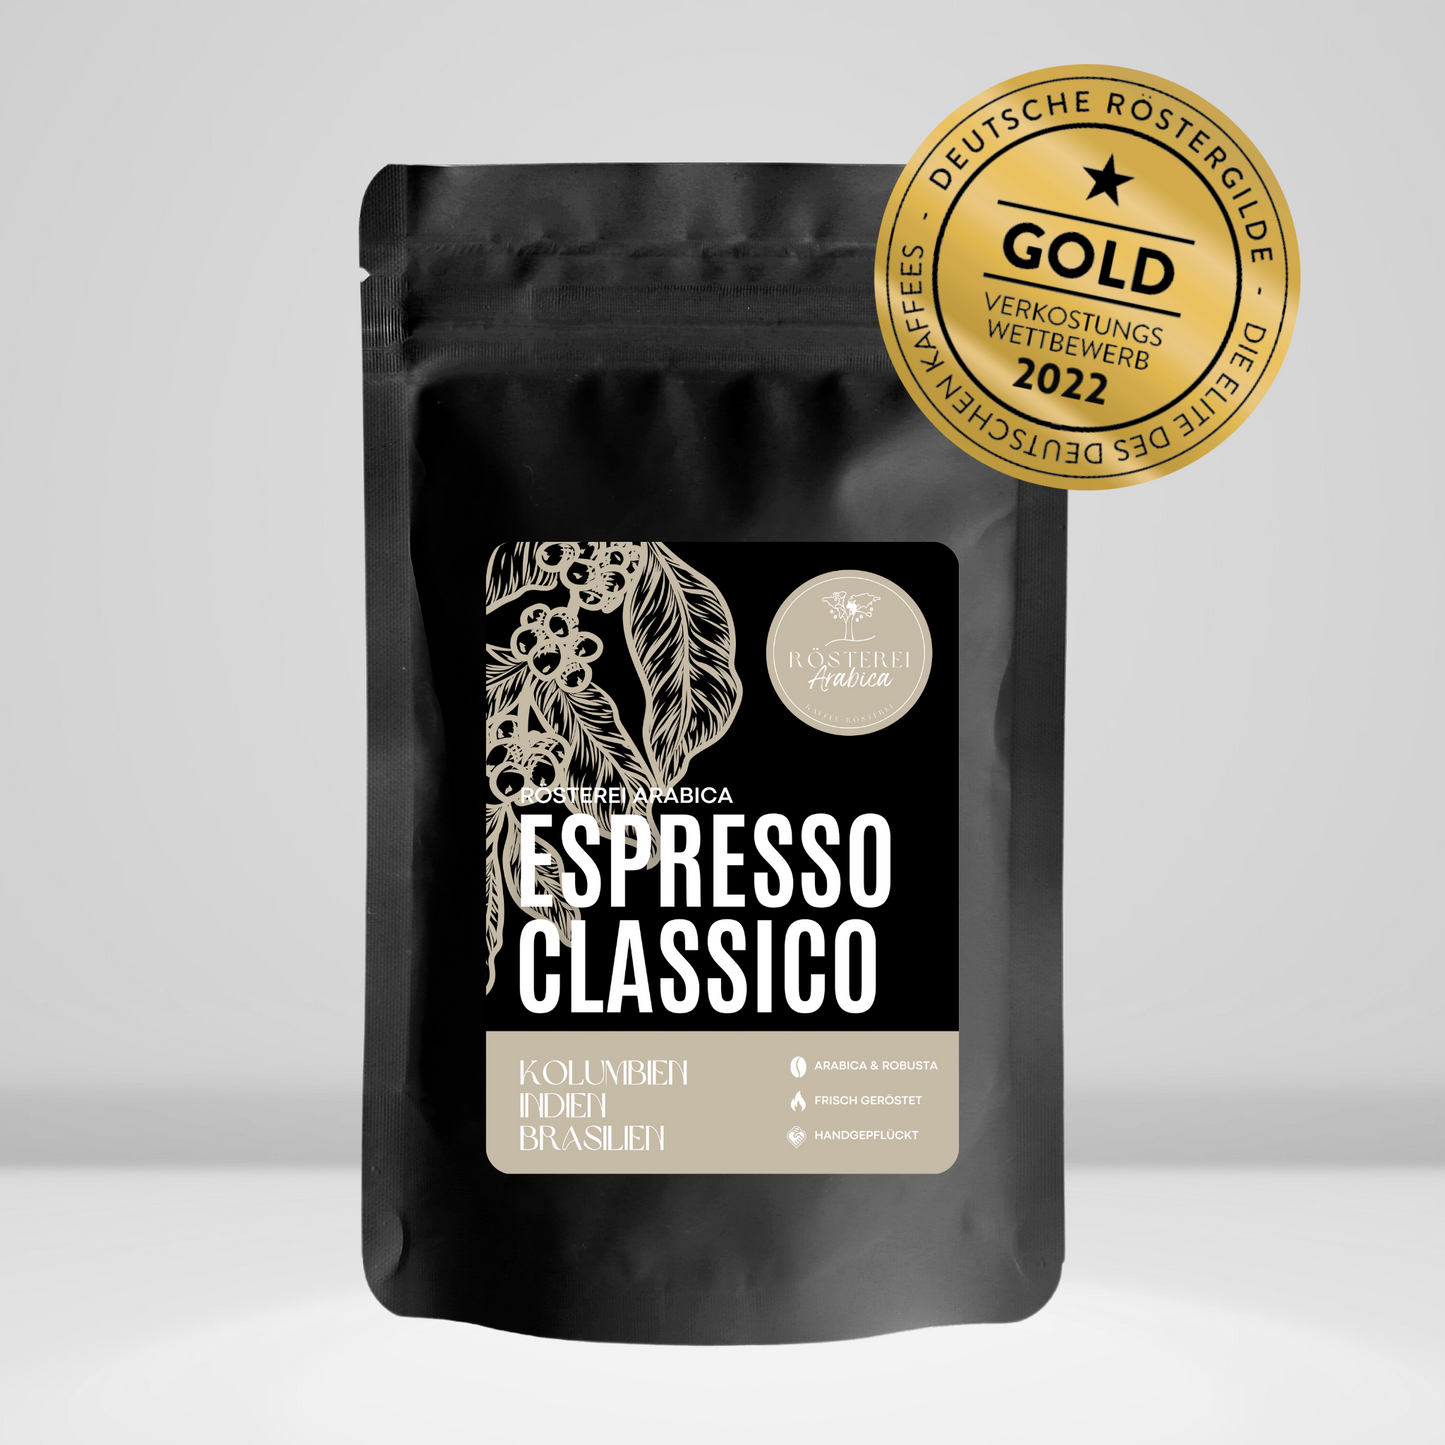 Espresso Classico - Goldmedaille 2021